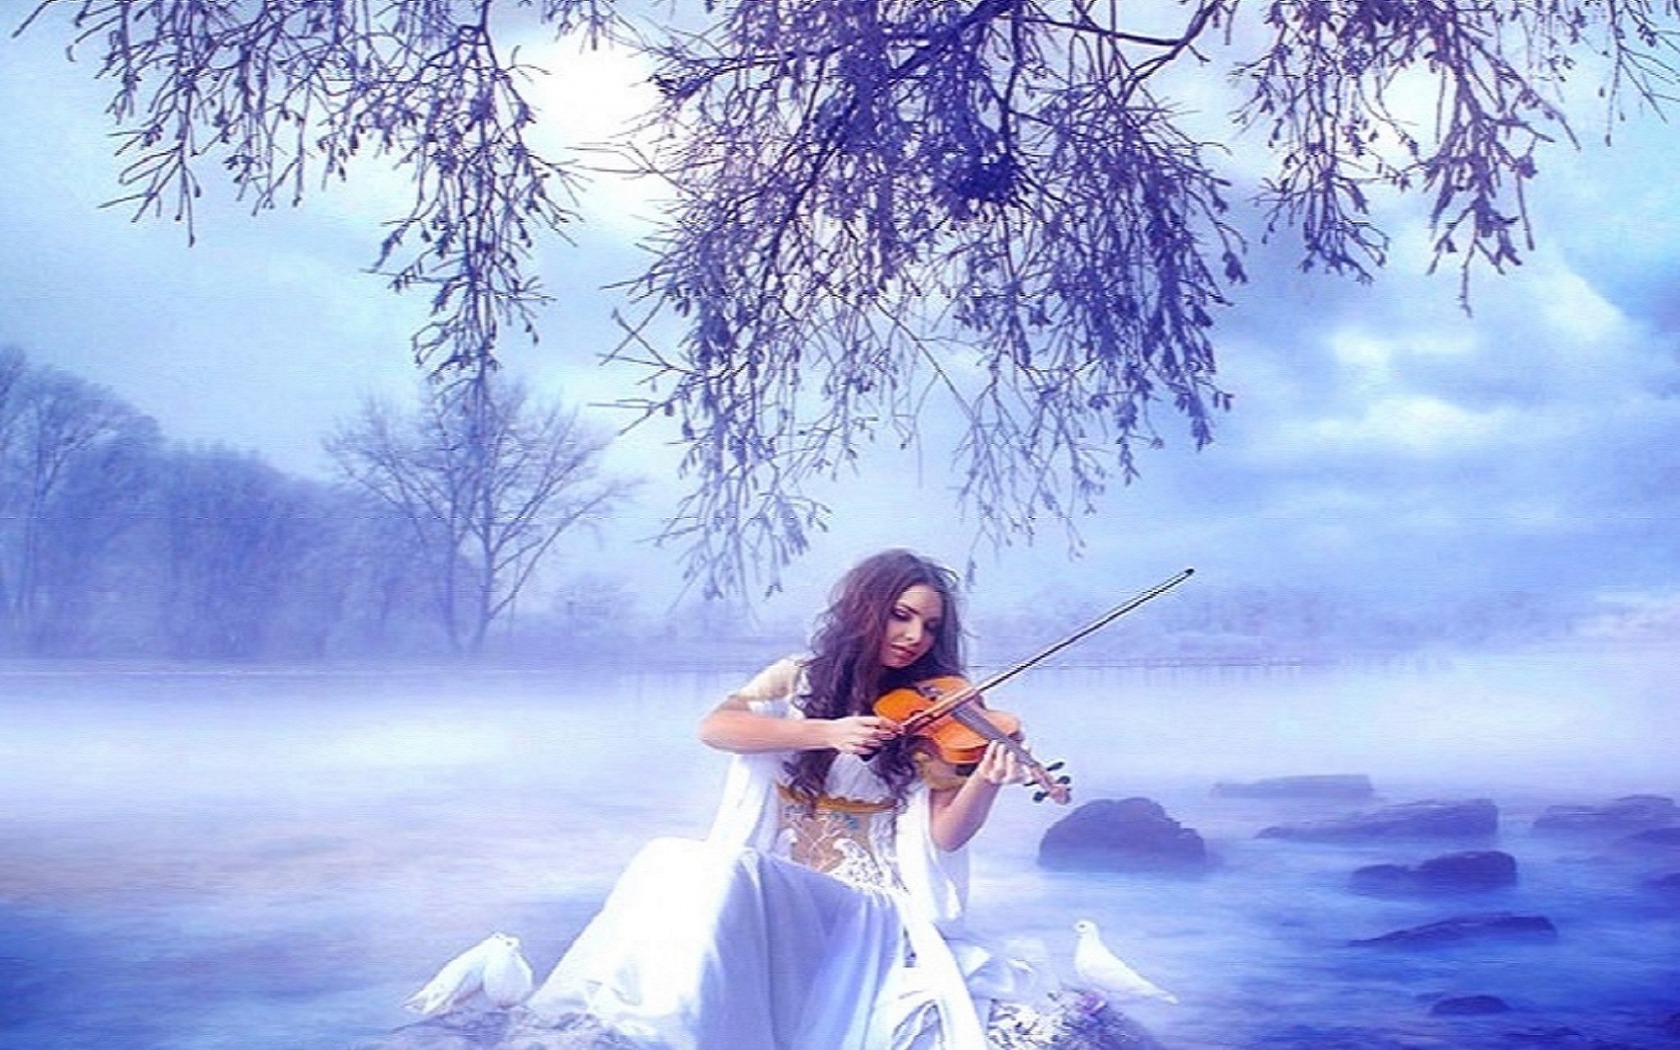 Музыка для души без слов слушать. Скрипачка в белом. Скрипка зимой. Девушка со скрипкой в лесу. Фотосессия со скрипкой зимой.